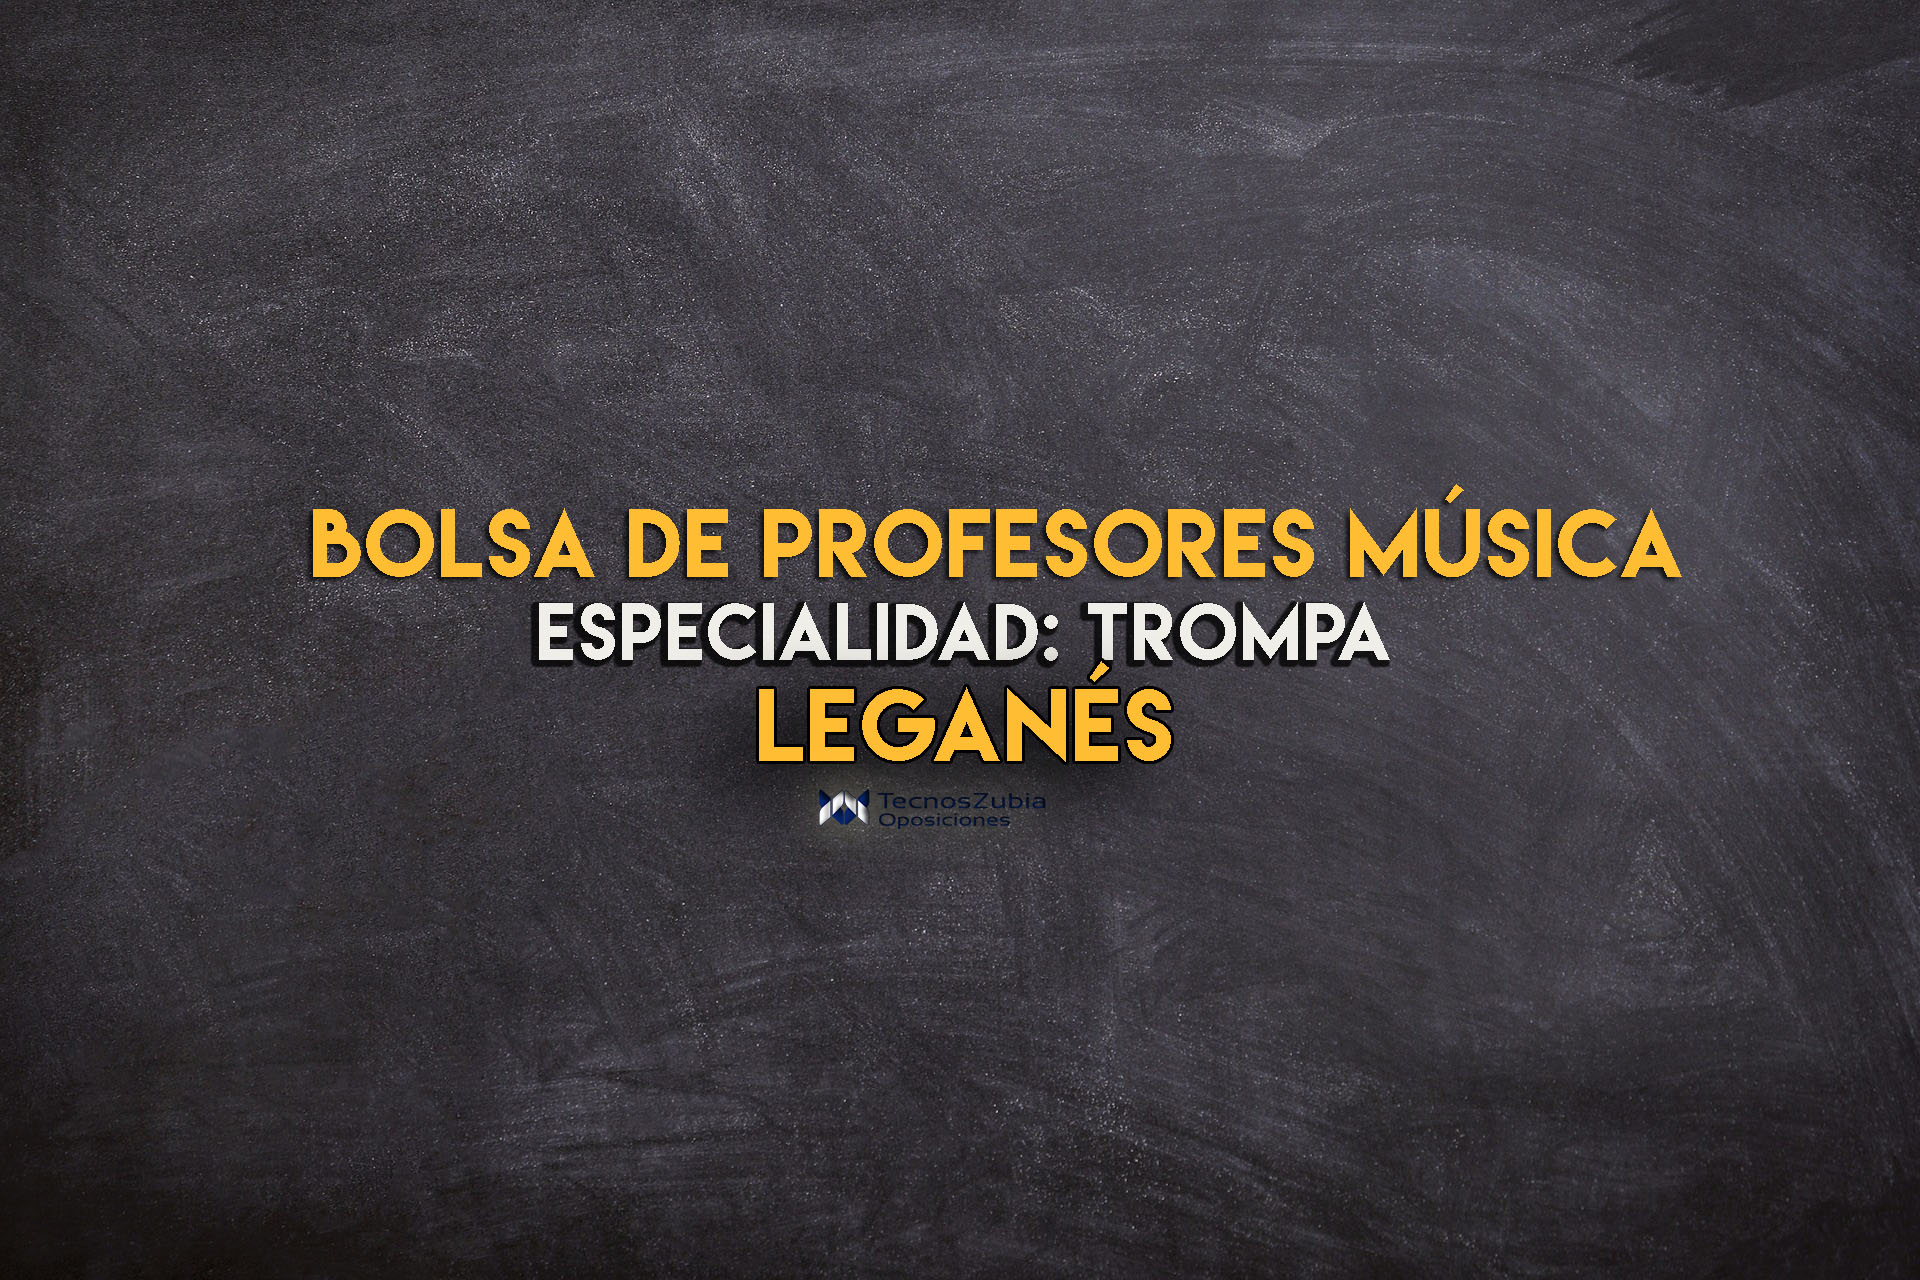 Leganés bolsa de profesores música, especialidad trompa